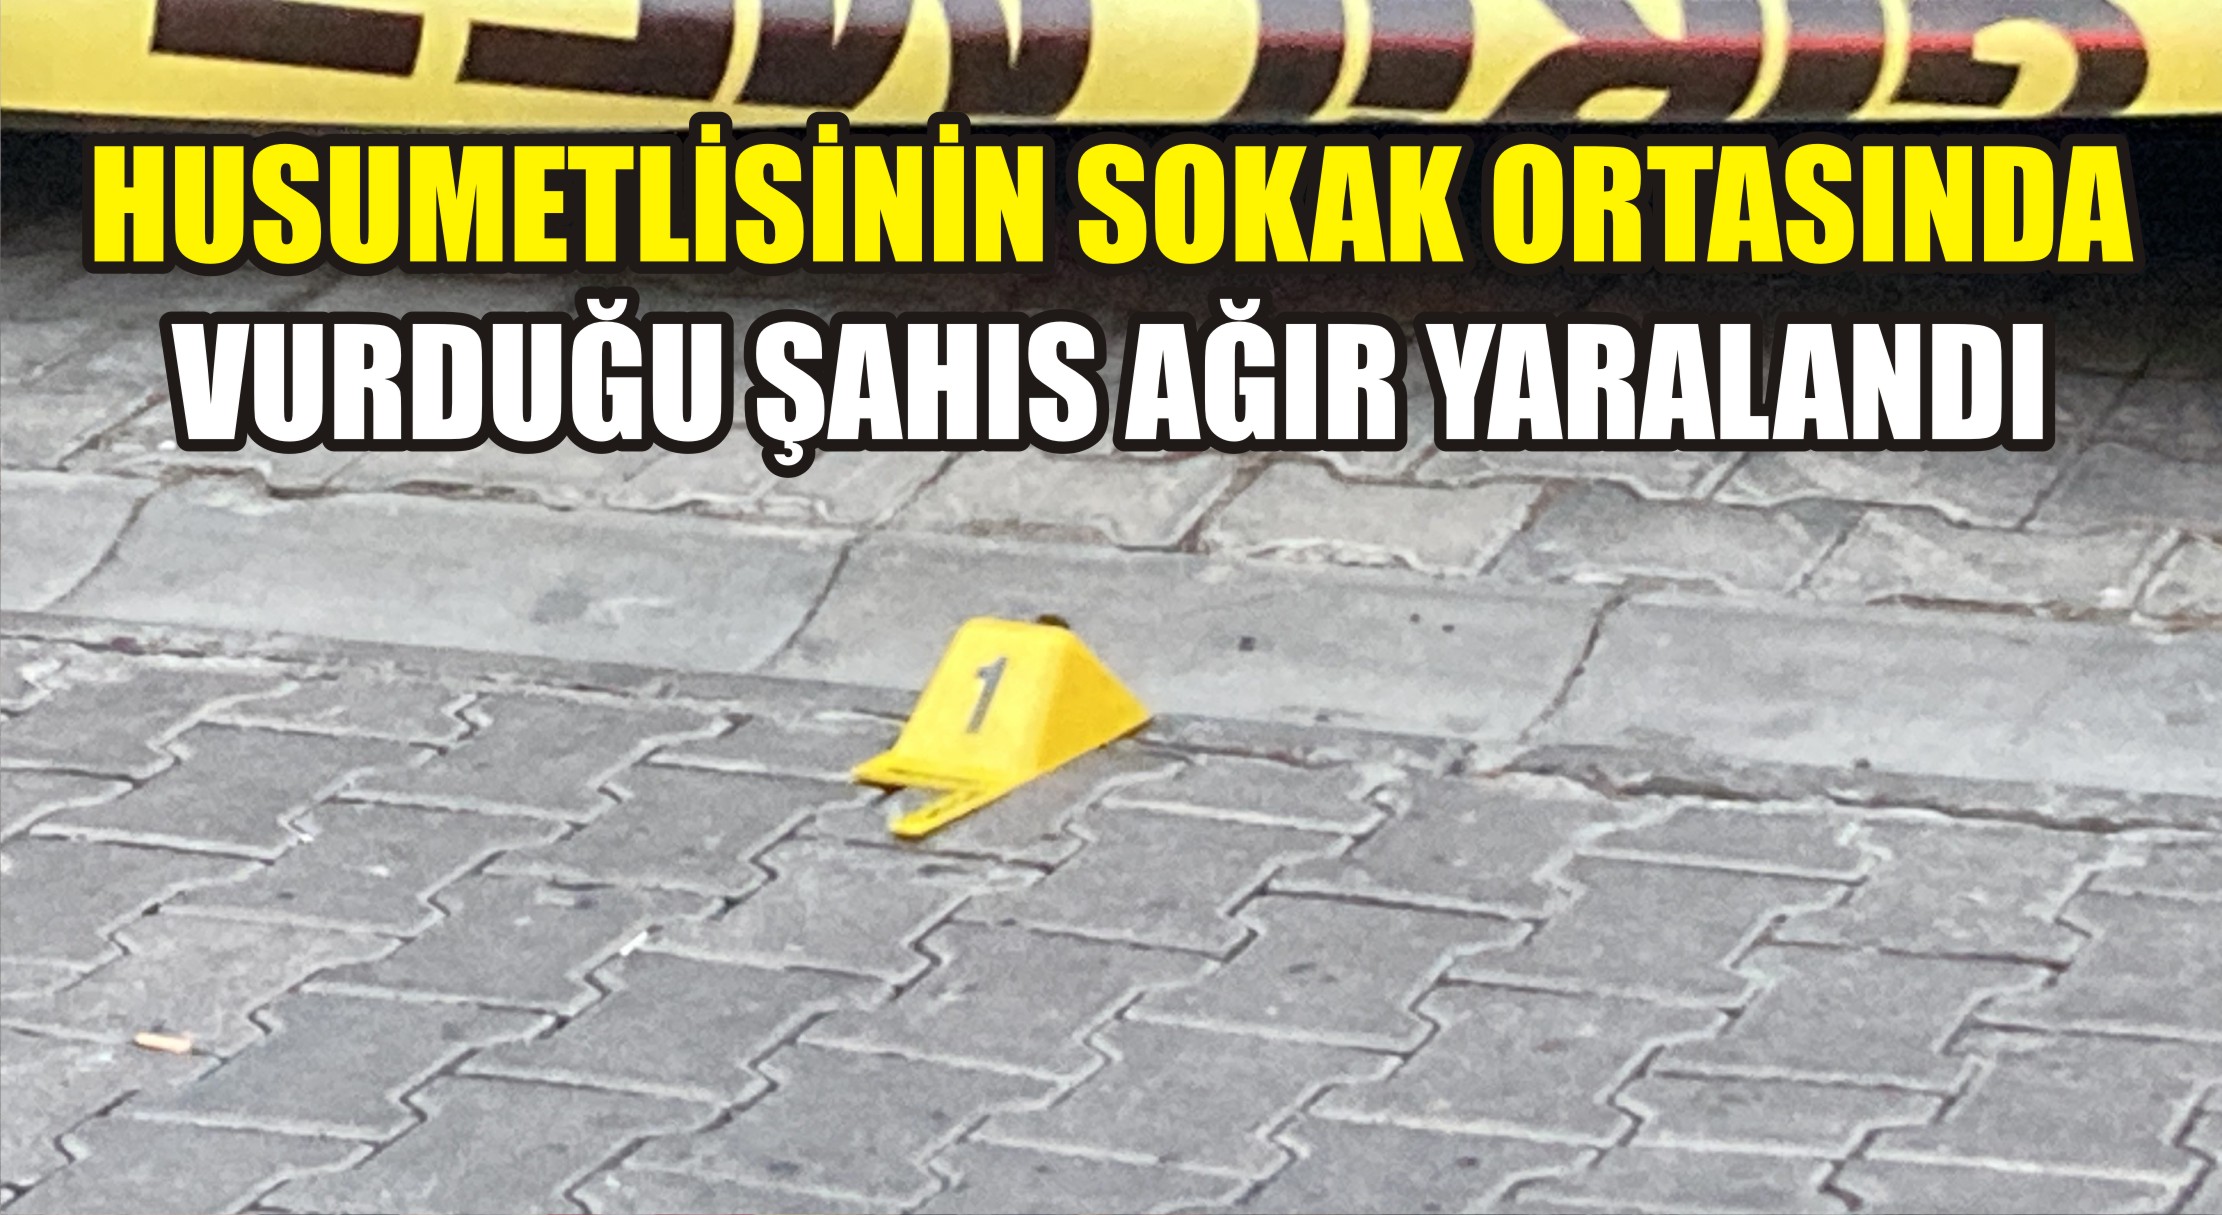 İzmir’in Karşıyaka ilçesinde iddiaya